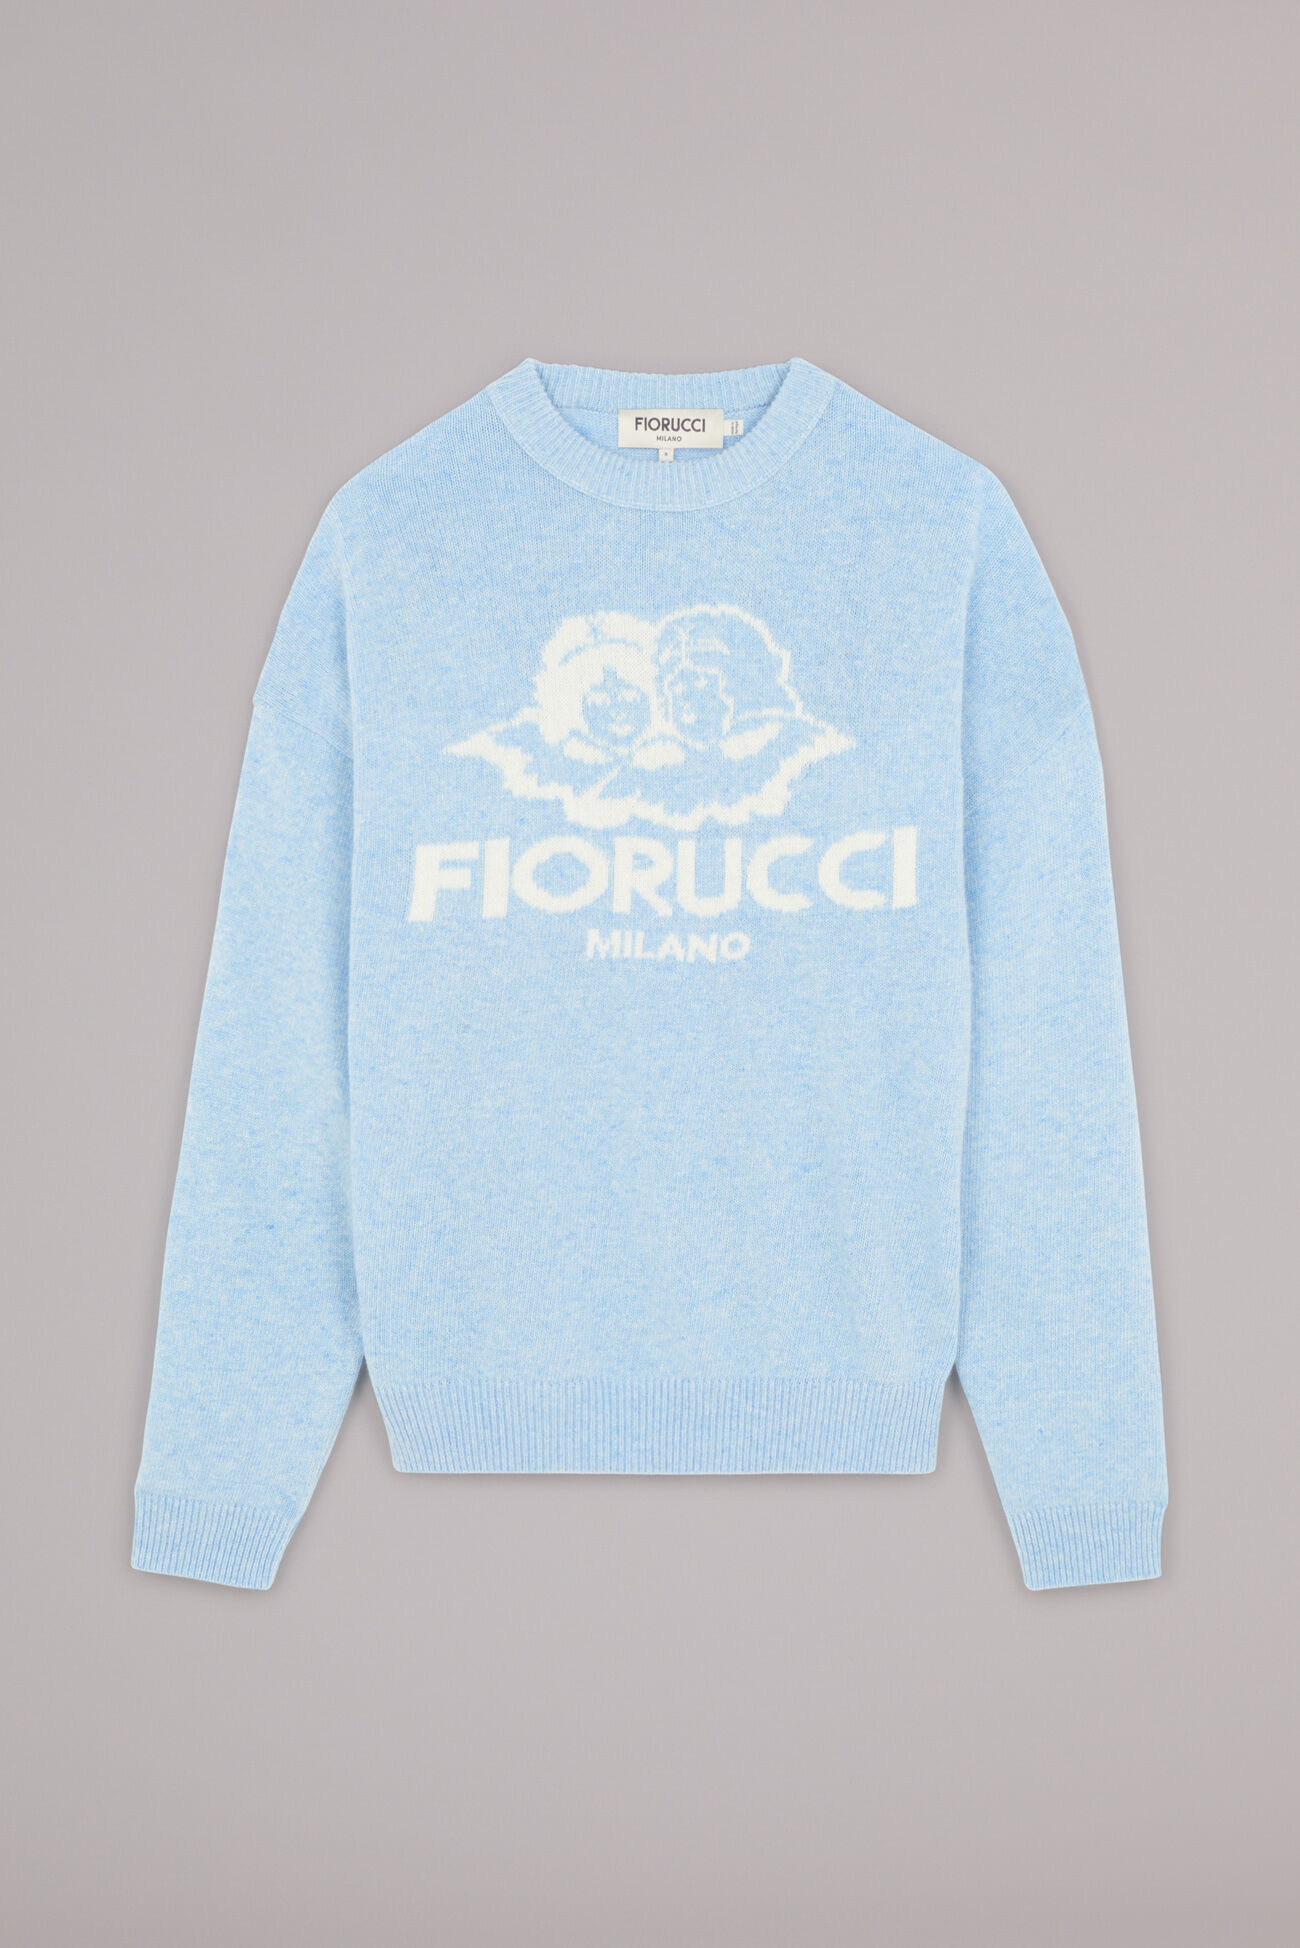 Fiorucci Intarsia Knit Sweater in Blue Monogram